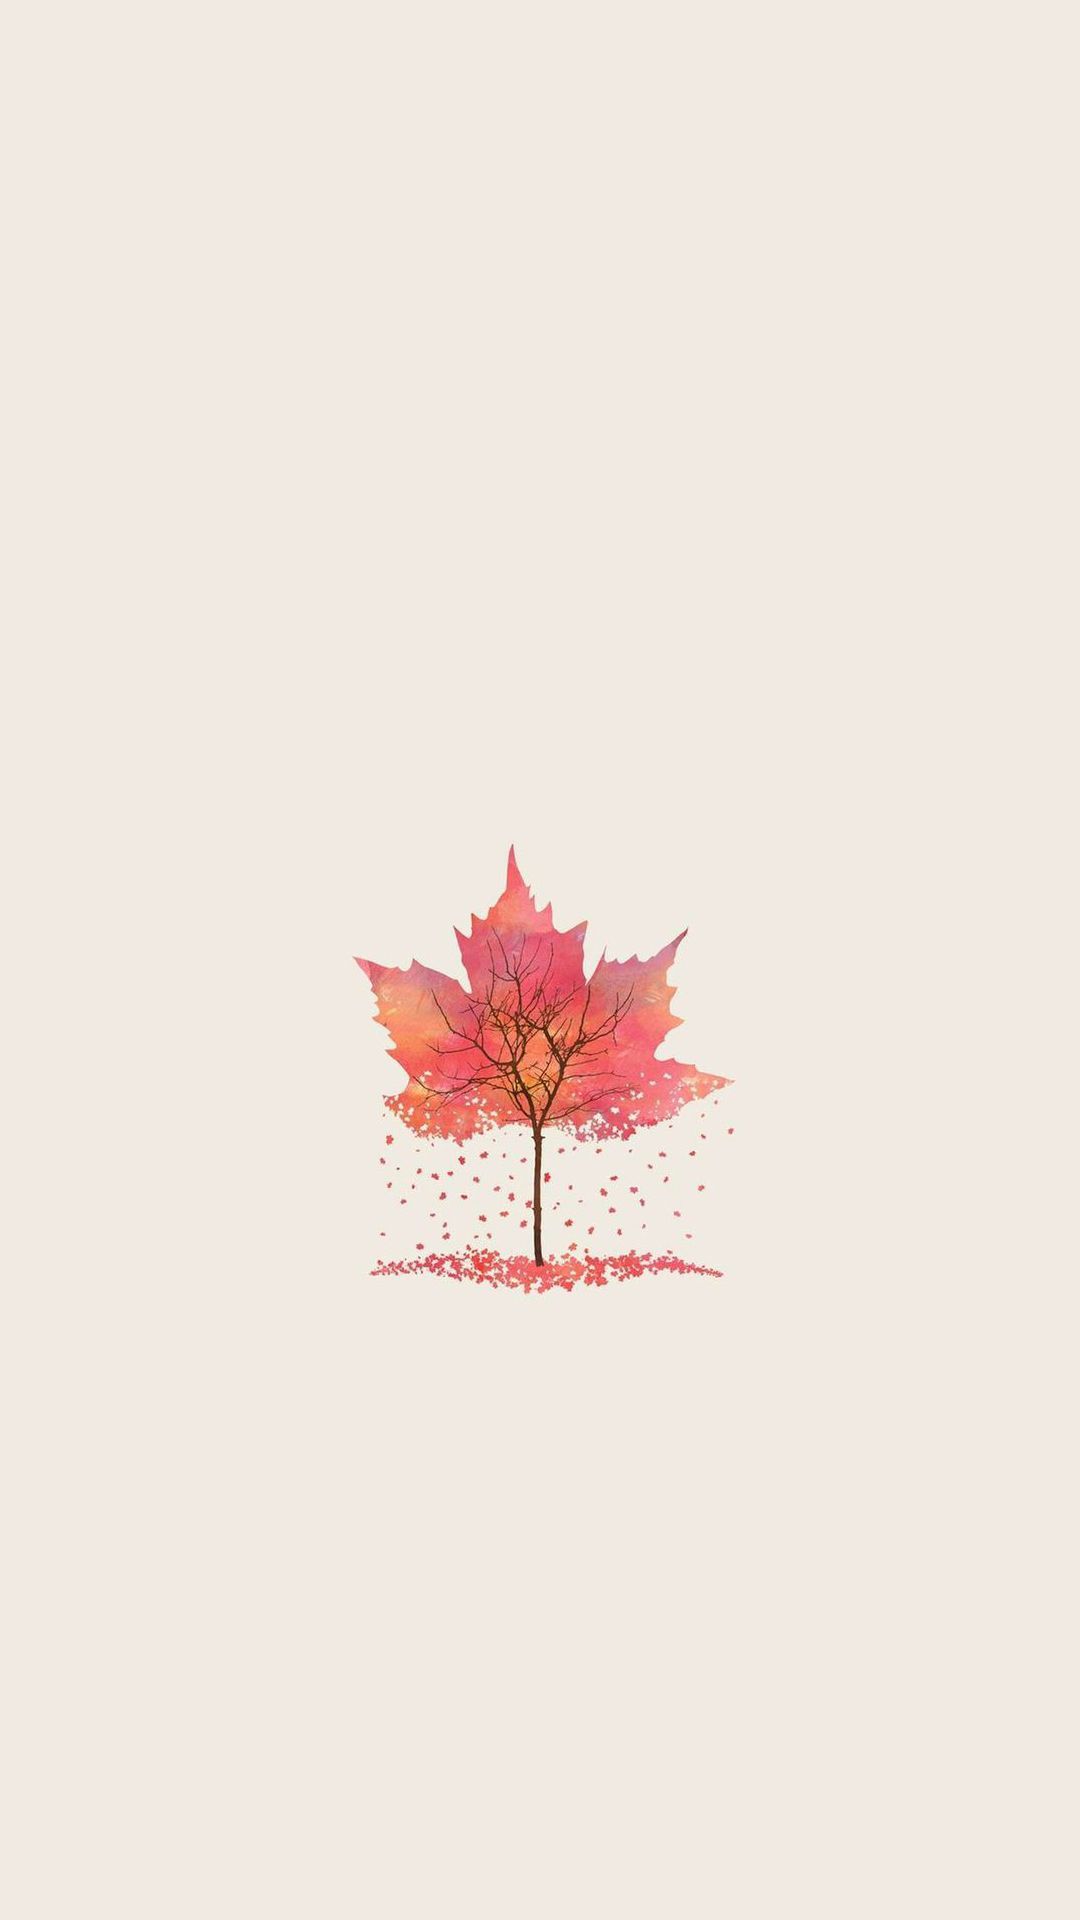 Minimal Autumn Tree Leaf Illustration Android Wallpaper. Autumn leaves wallpaper, Fall wallpaper, Leaf illustration